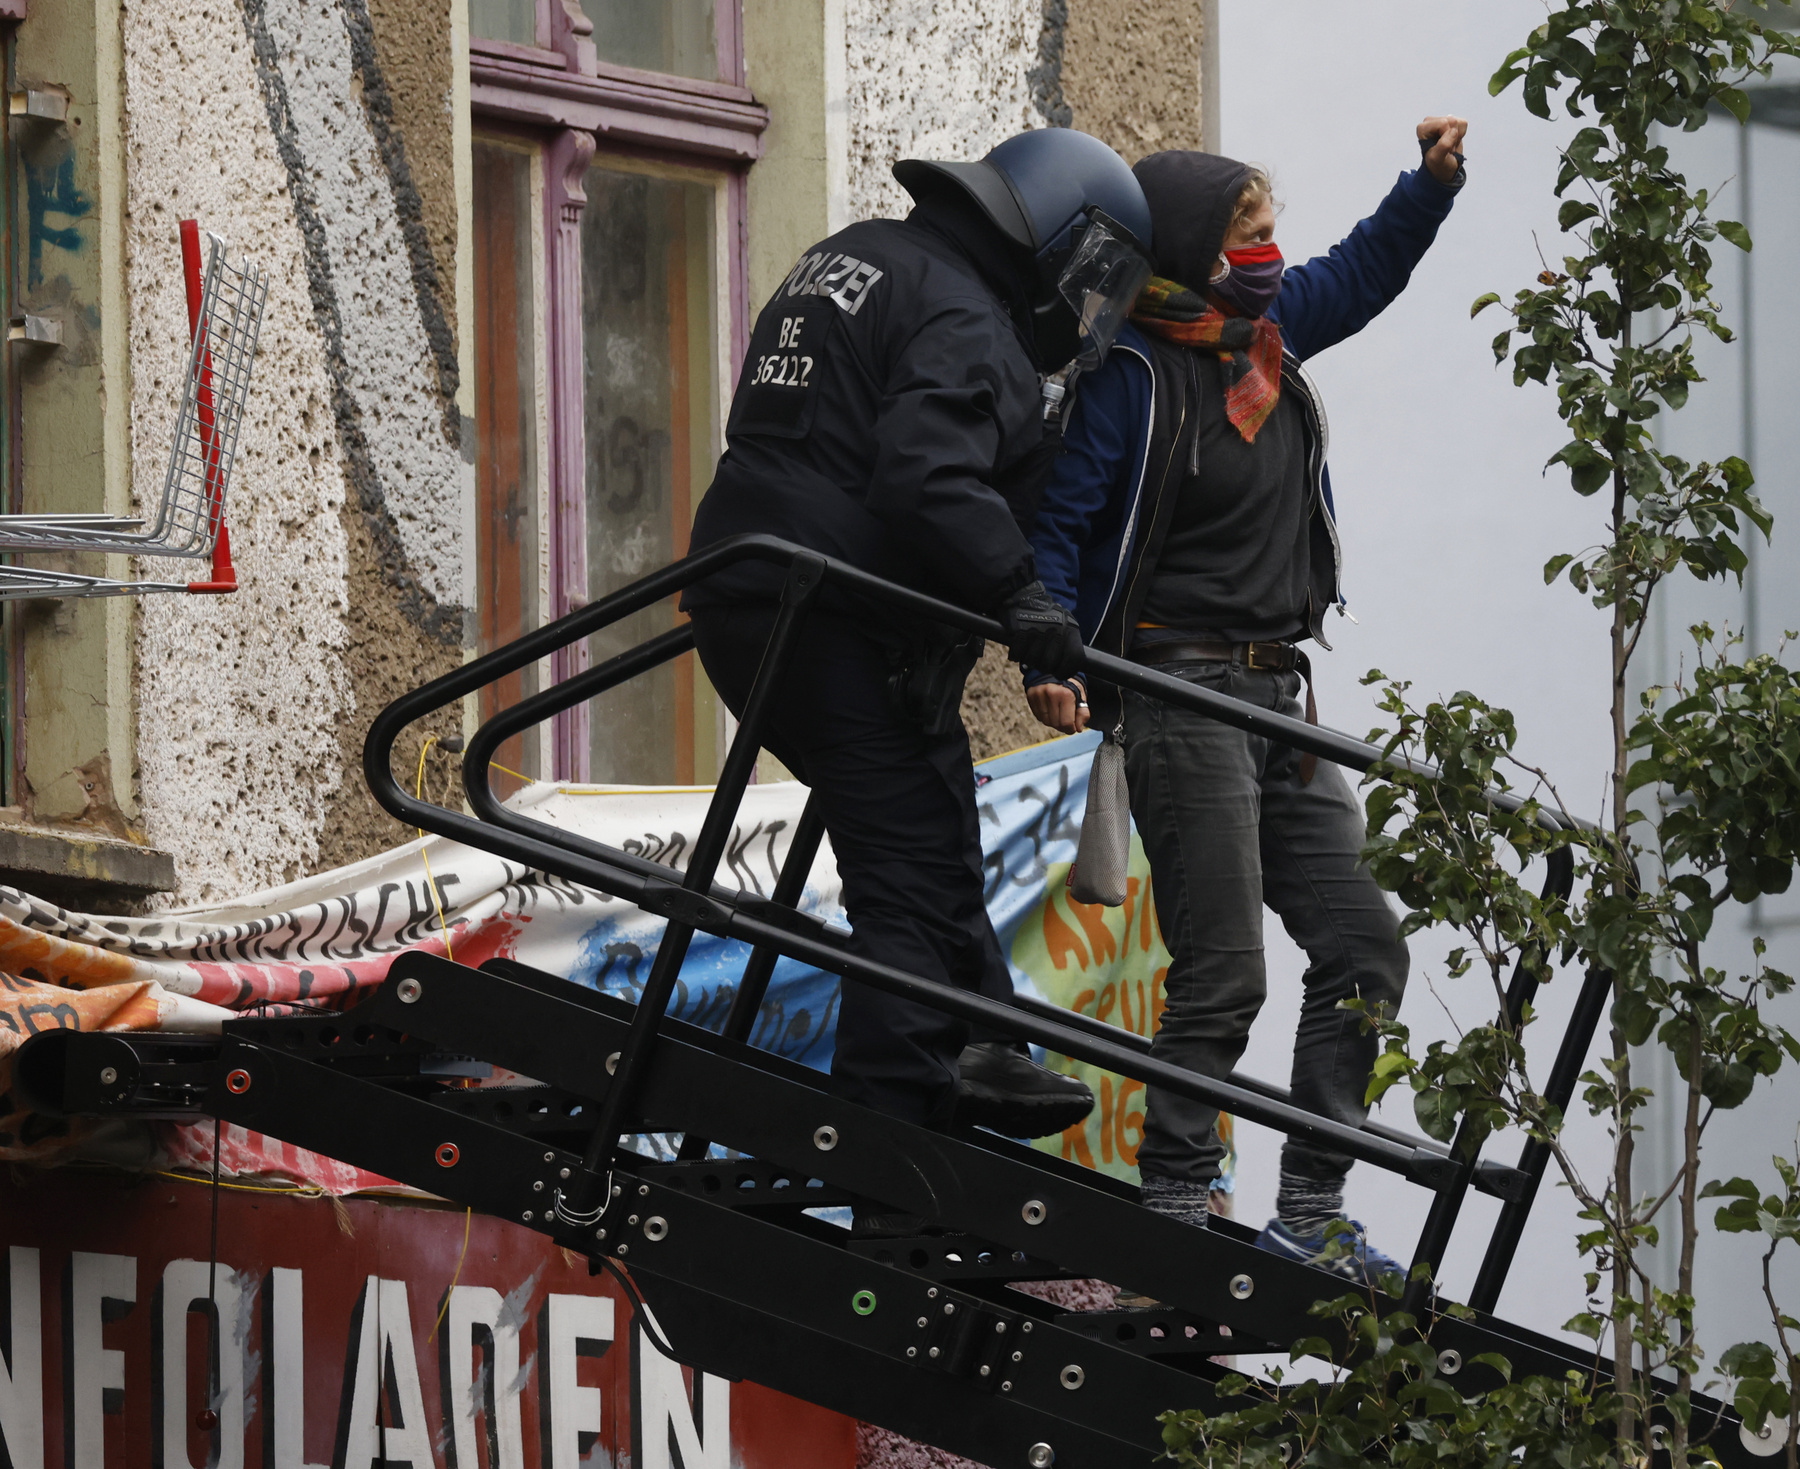 A rendőrség által kitessékelt tüntető emeli fel öklét a berlini Liebig utca 34-nél